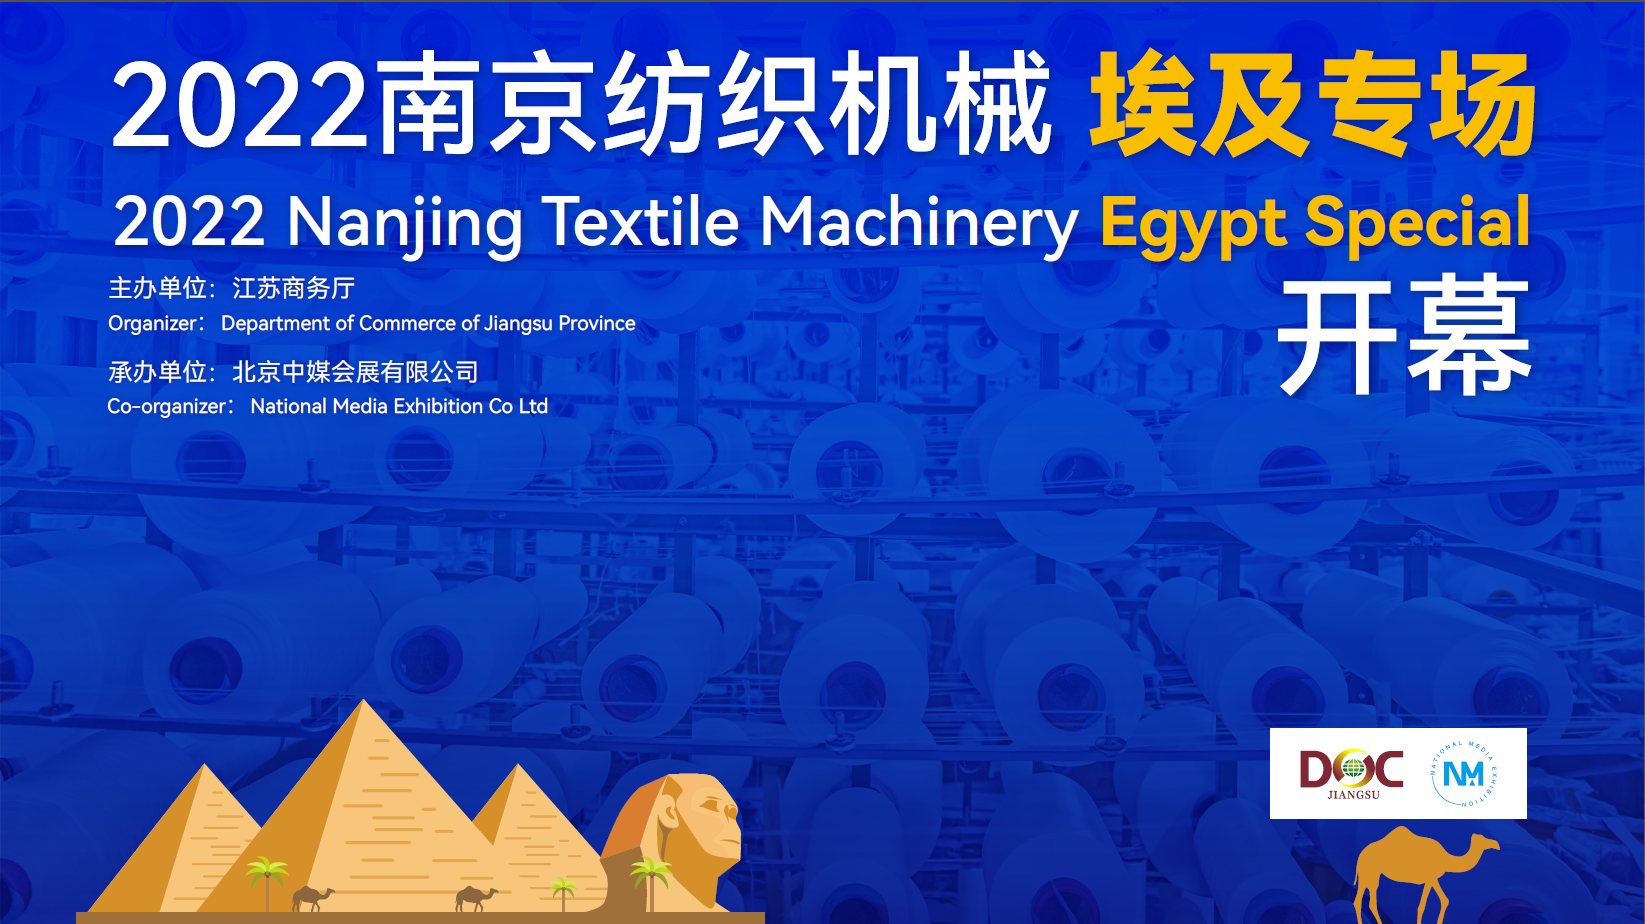 2022年江苏南京纺织机械埃及专场线上对接会 7月25日